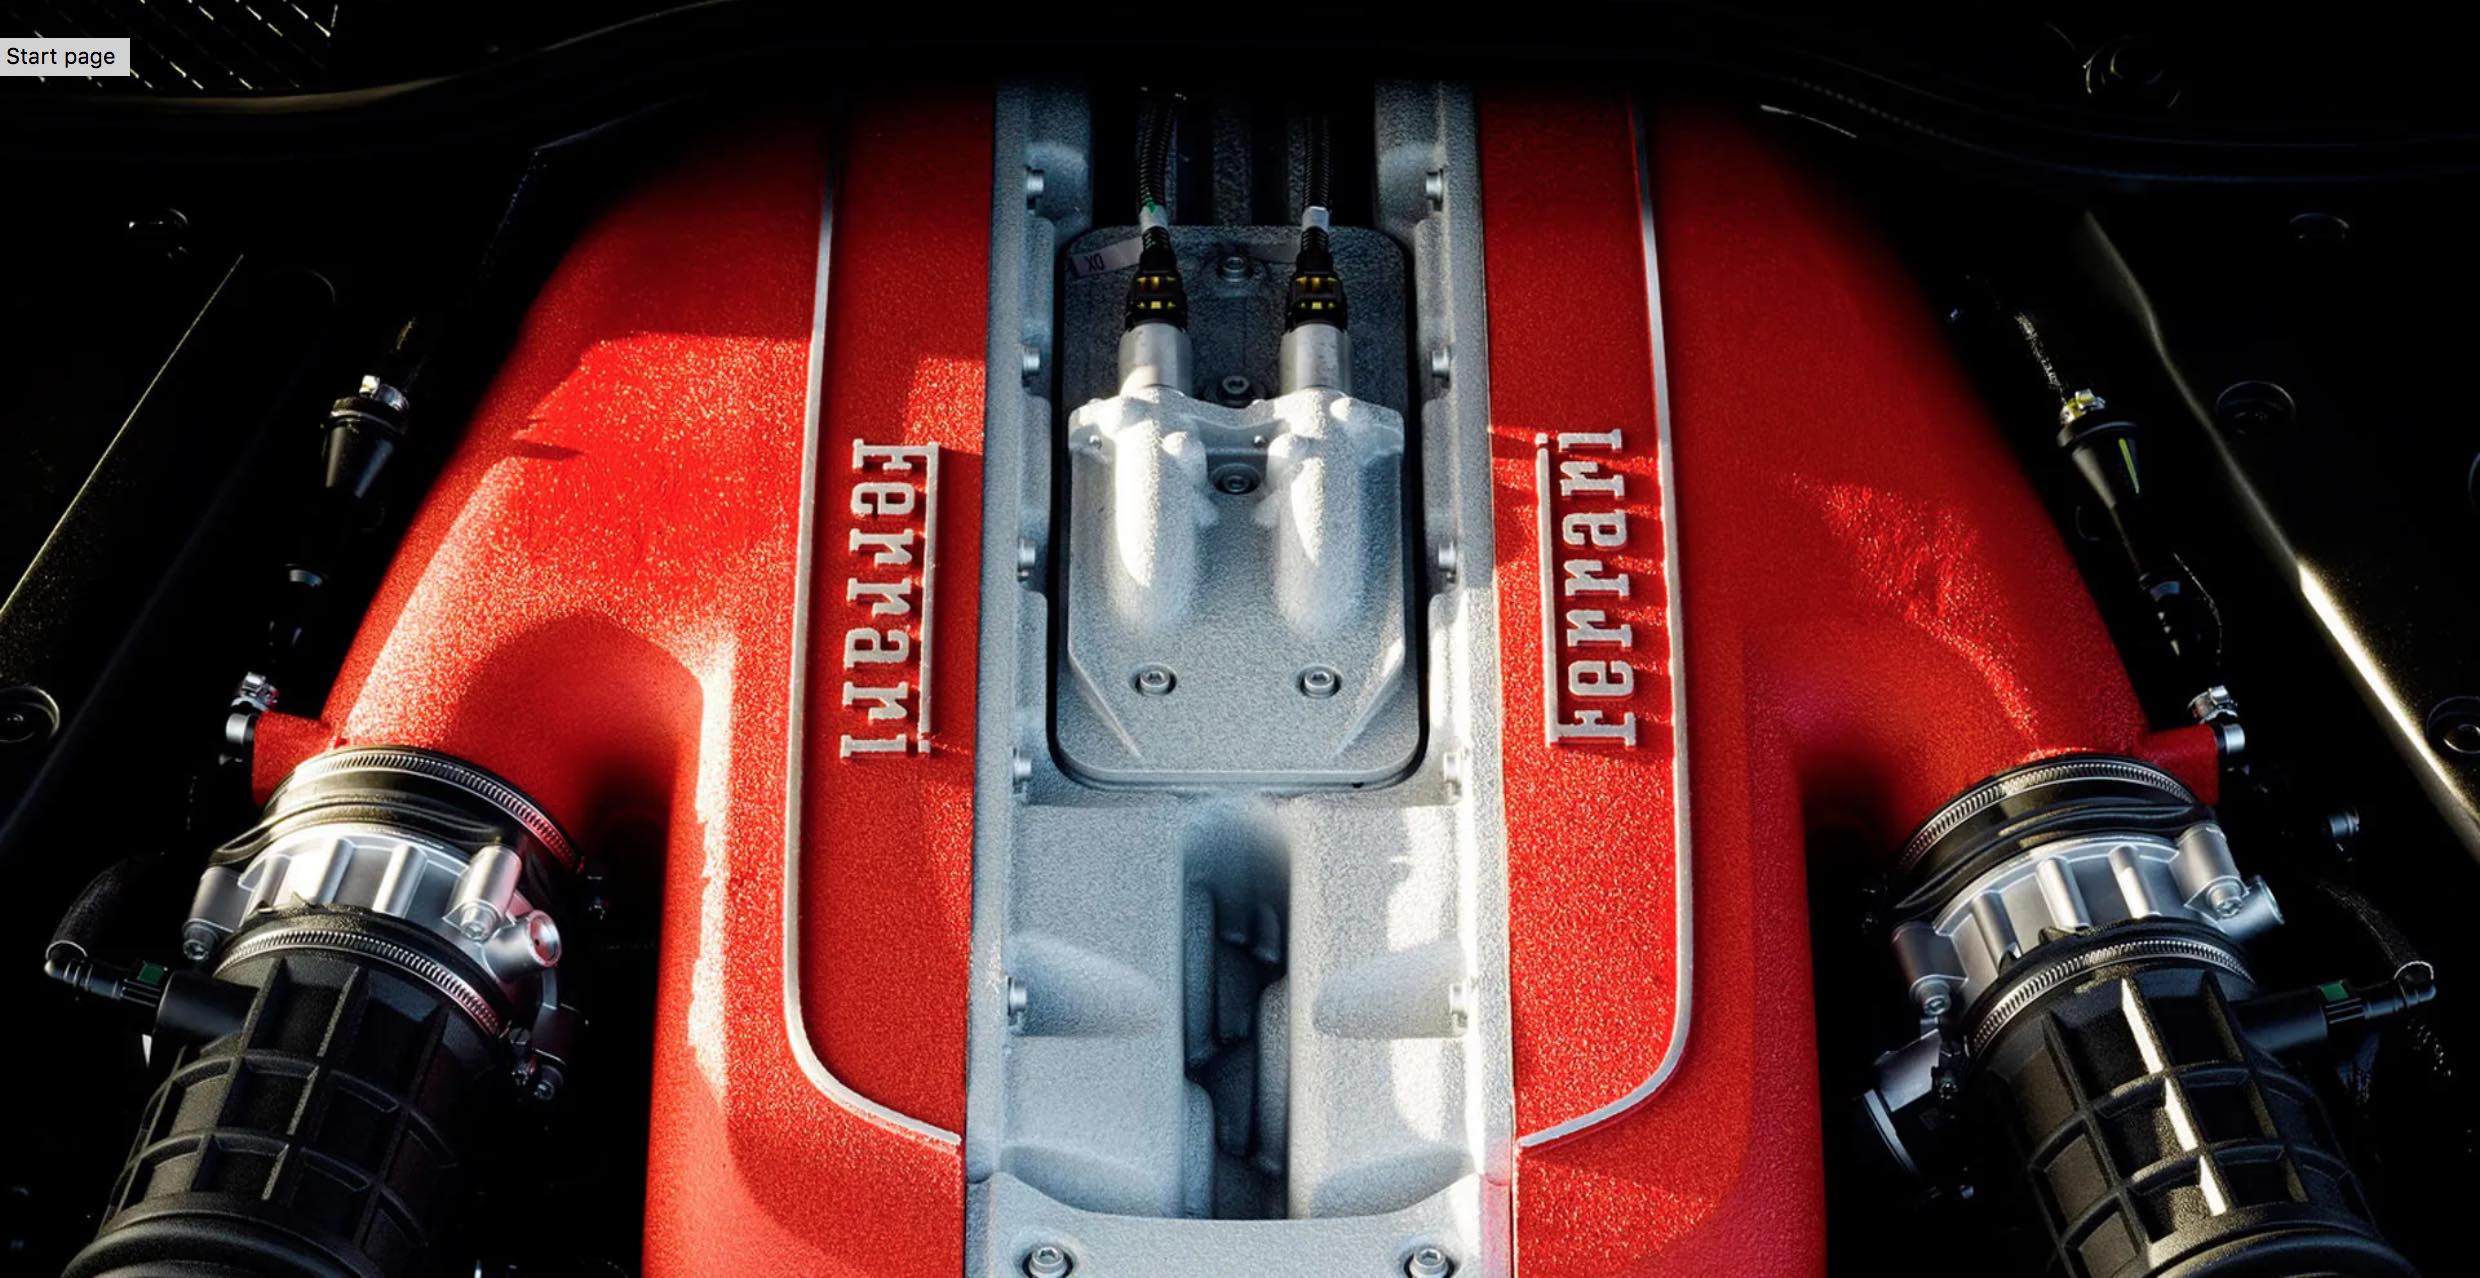 Fabrika Kaynakları, Ferrari turbo V12’si için tarih verdi